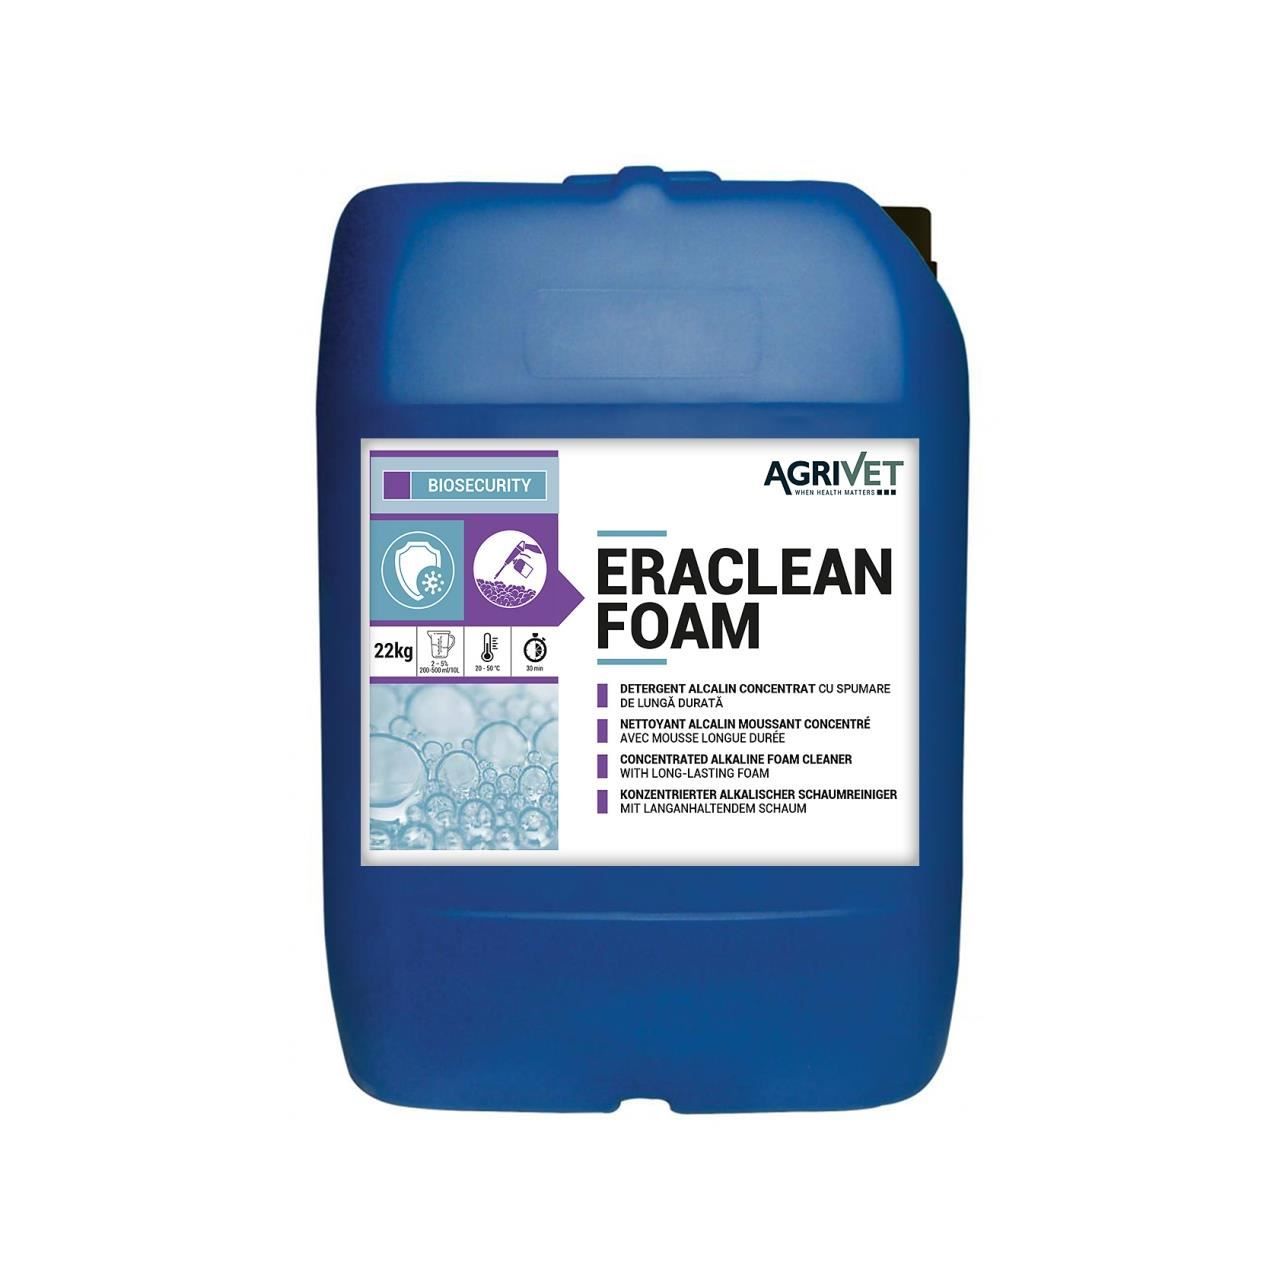 Eraclean Foam Detergent Alcalin 22kg